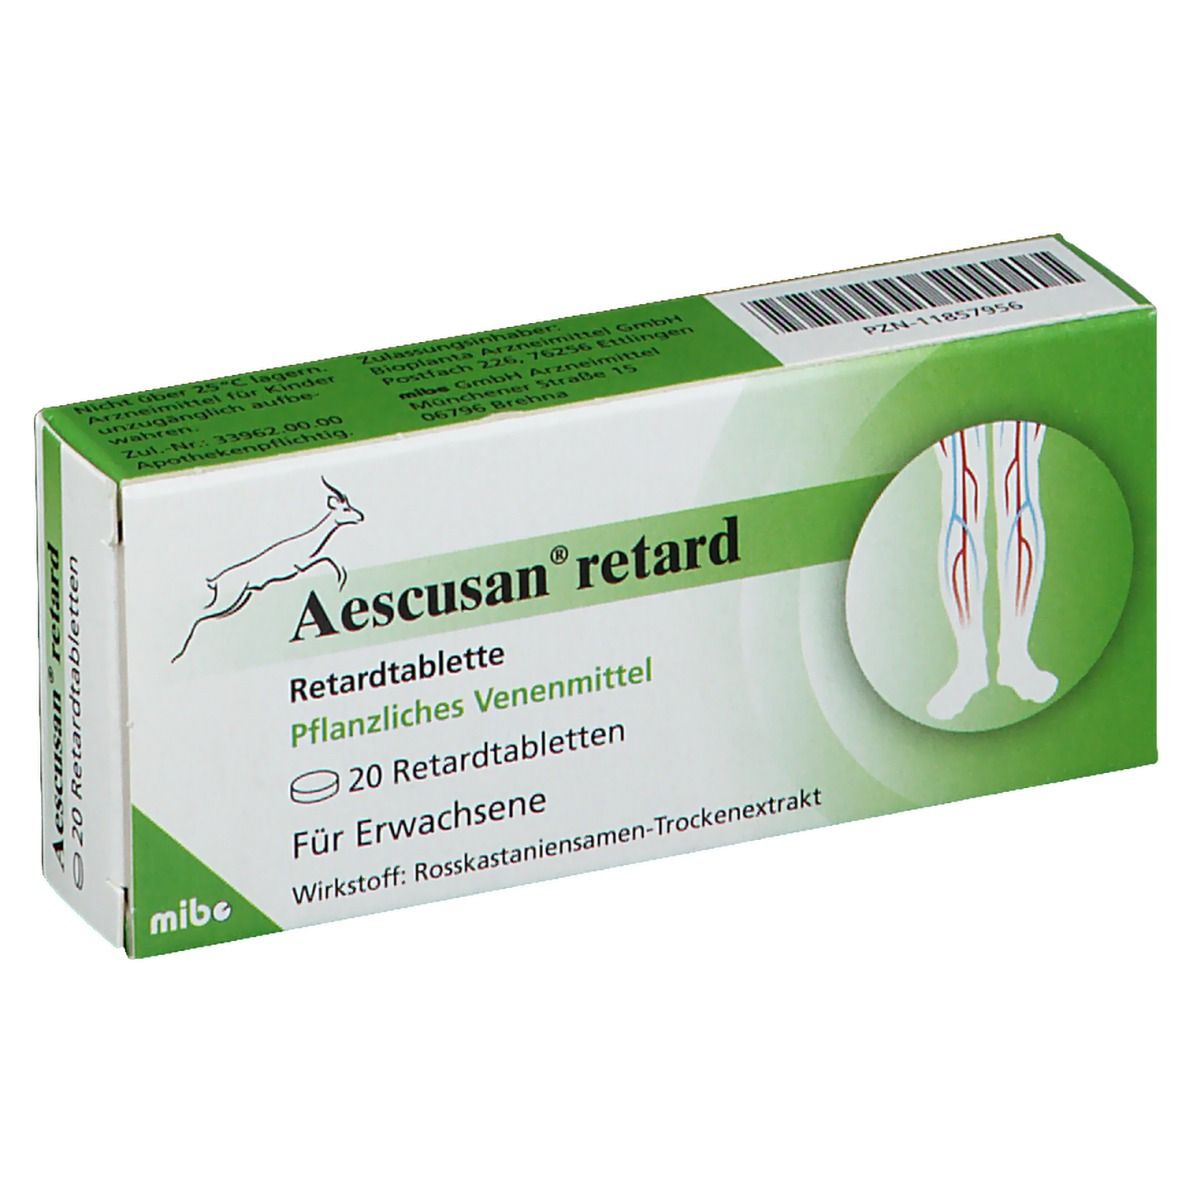 Aescusan® retard